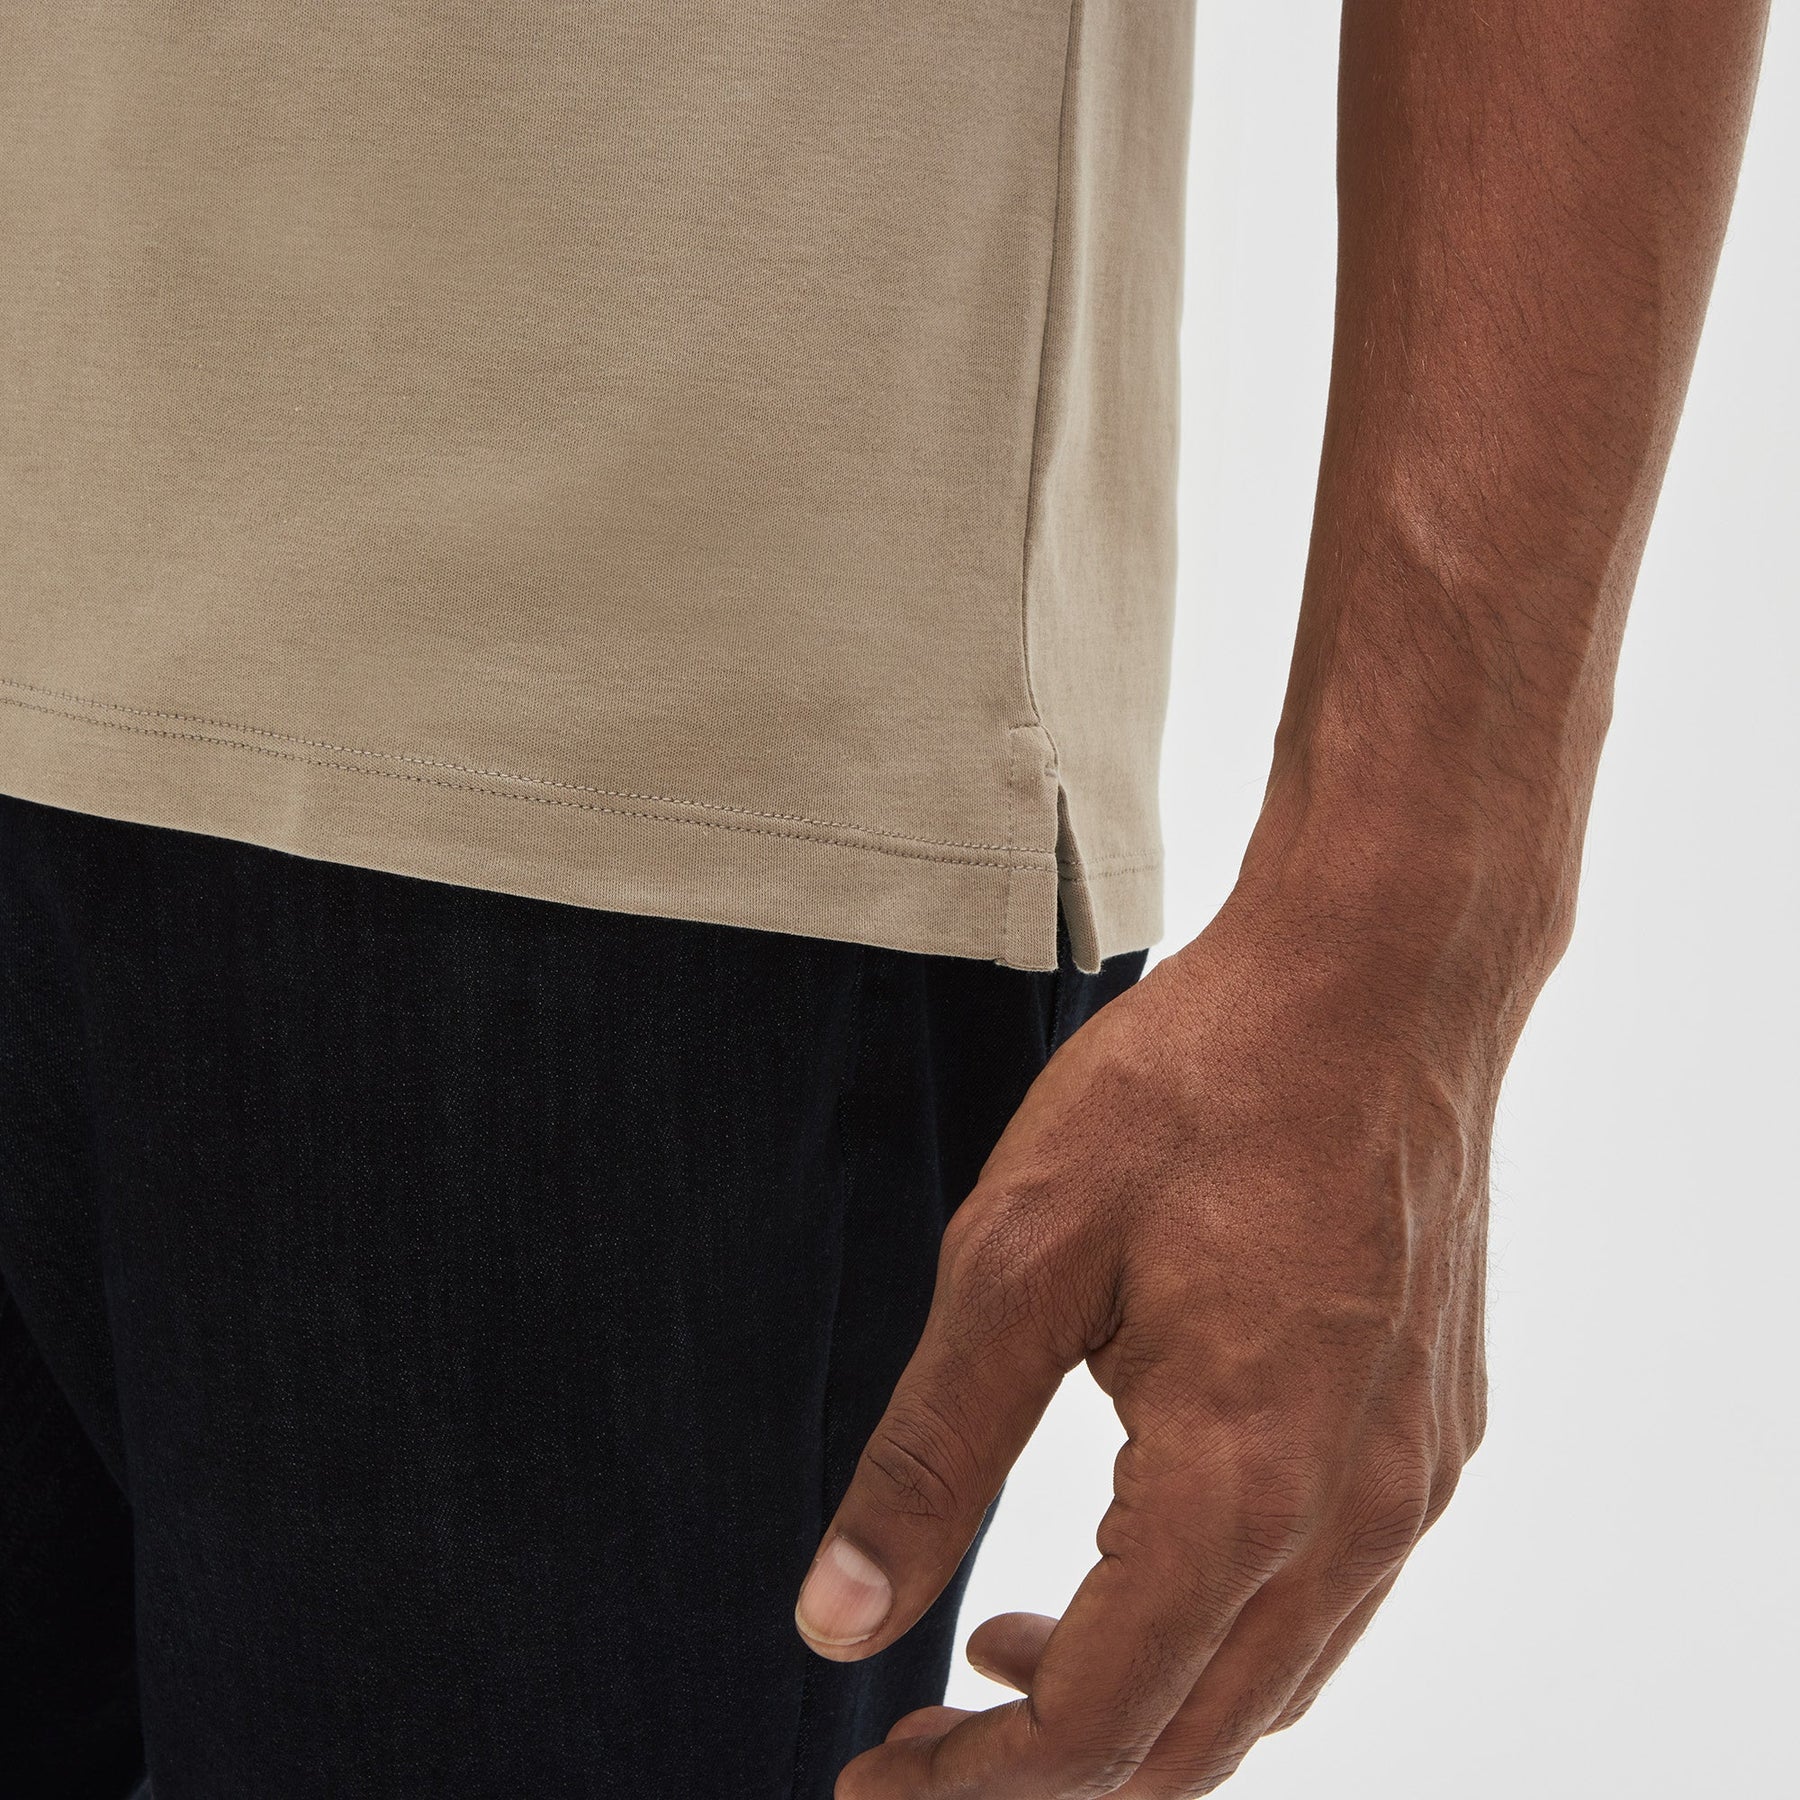 T-shirt col rond pour homme par Robert Barakett | Georgia 23336 TWIN | Machemise.ca, vêtements mode pour hommes